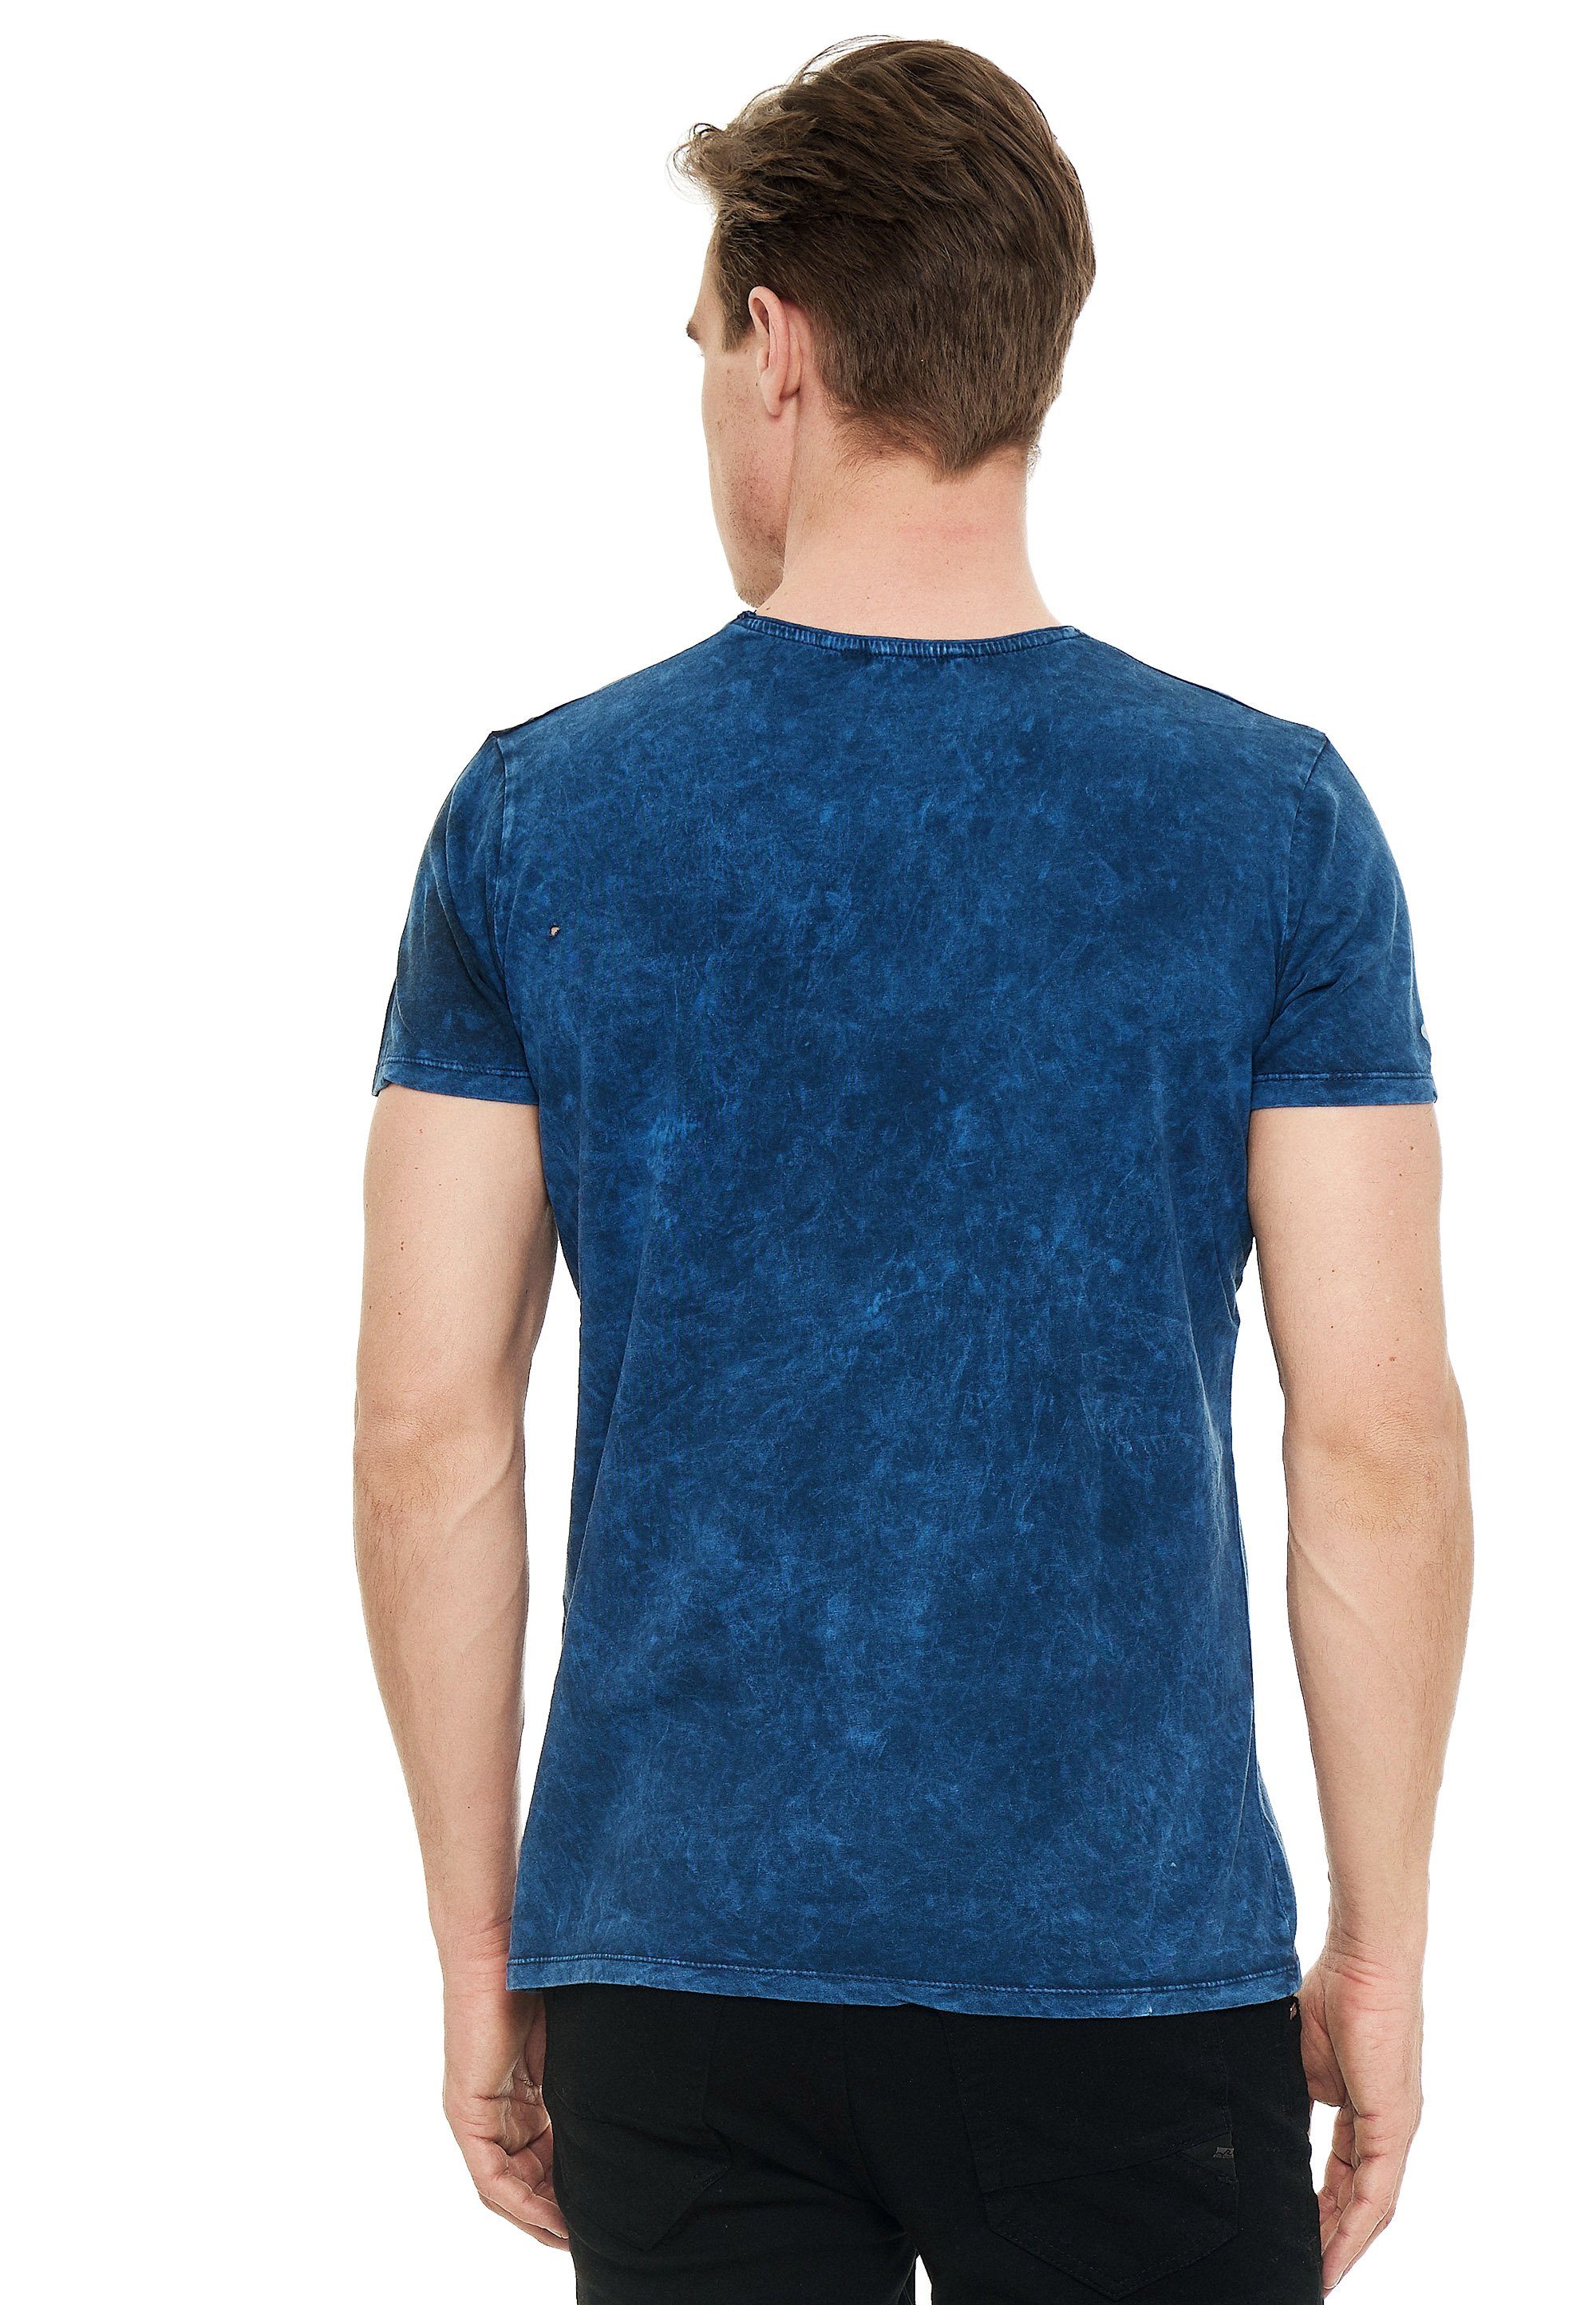 Rusty Neal Print mit blau T-Shirt eindrucksvollem